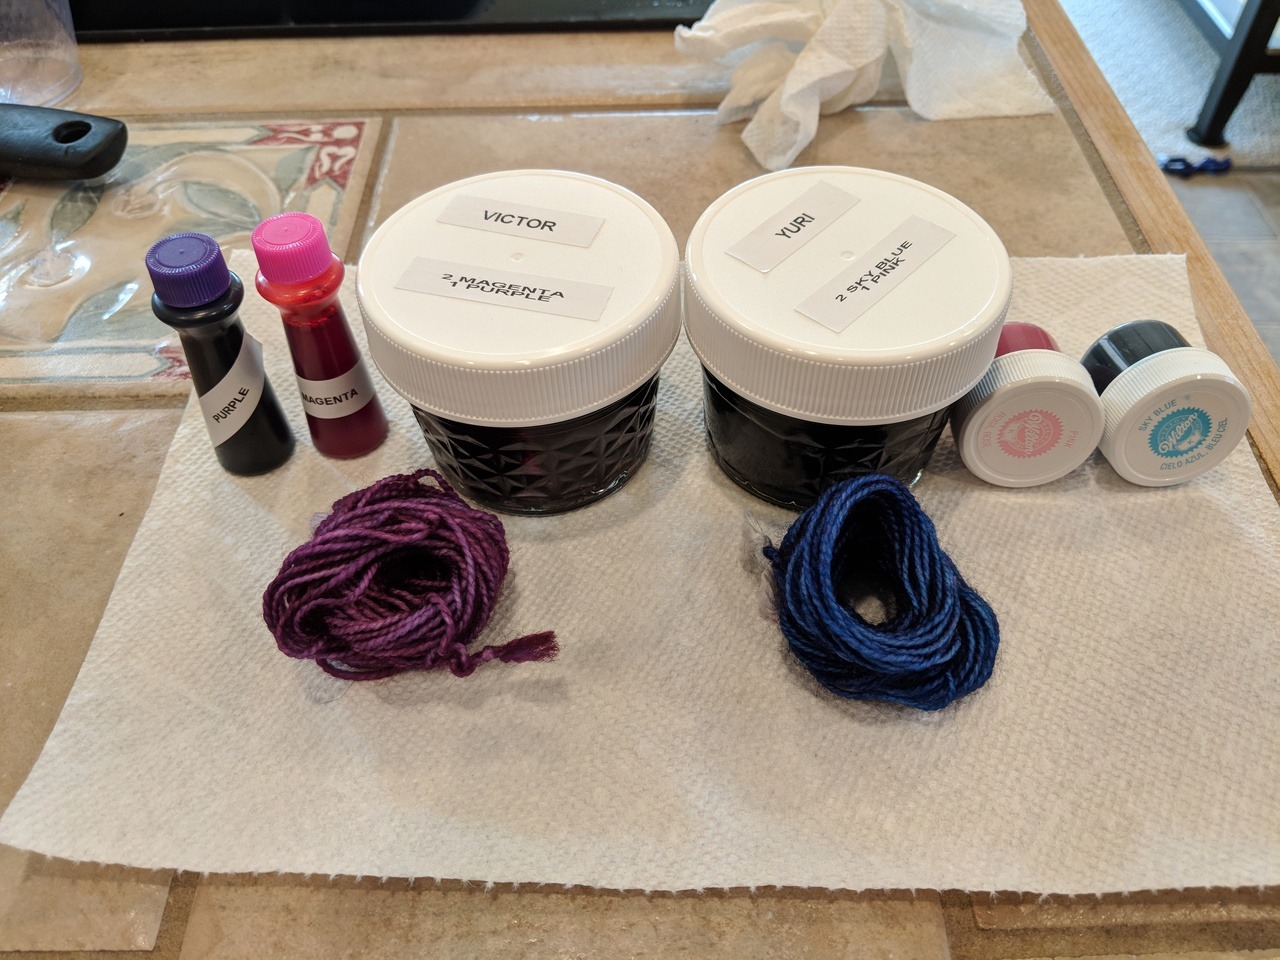 Dip Dyeing Yarn in Wilton's Violet Food Coloring 